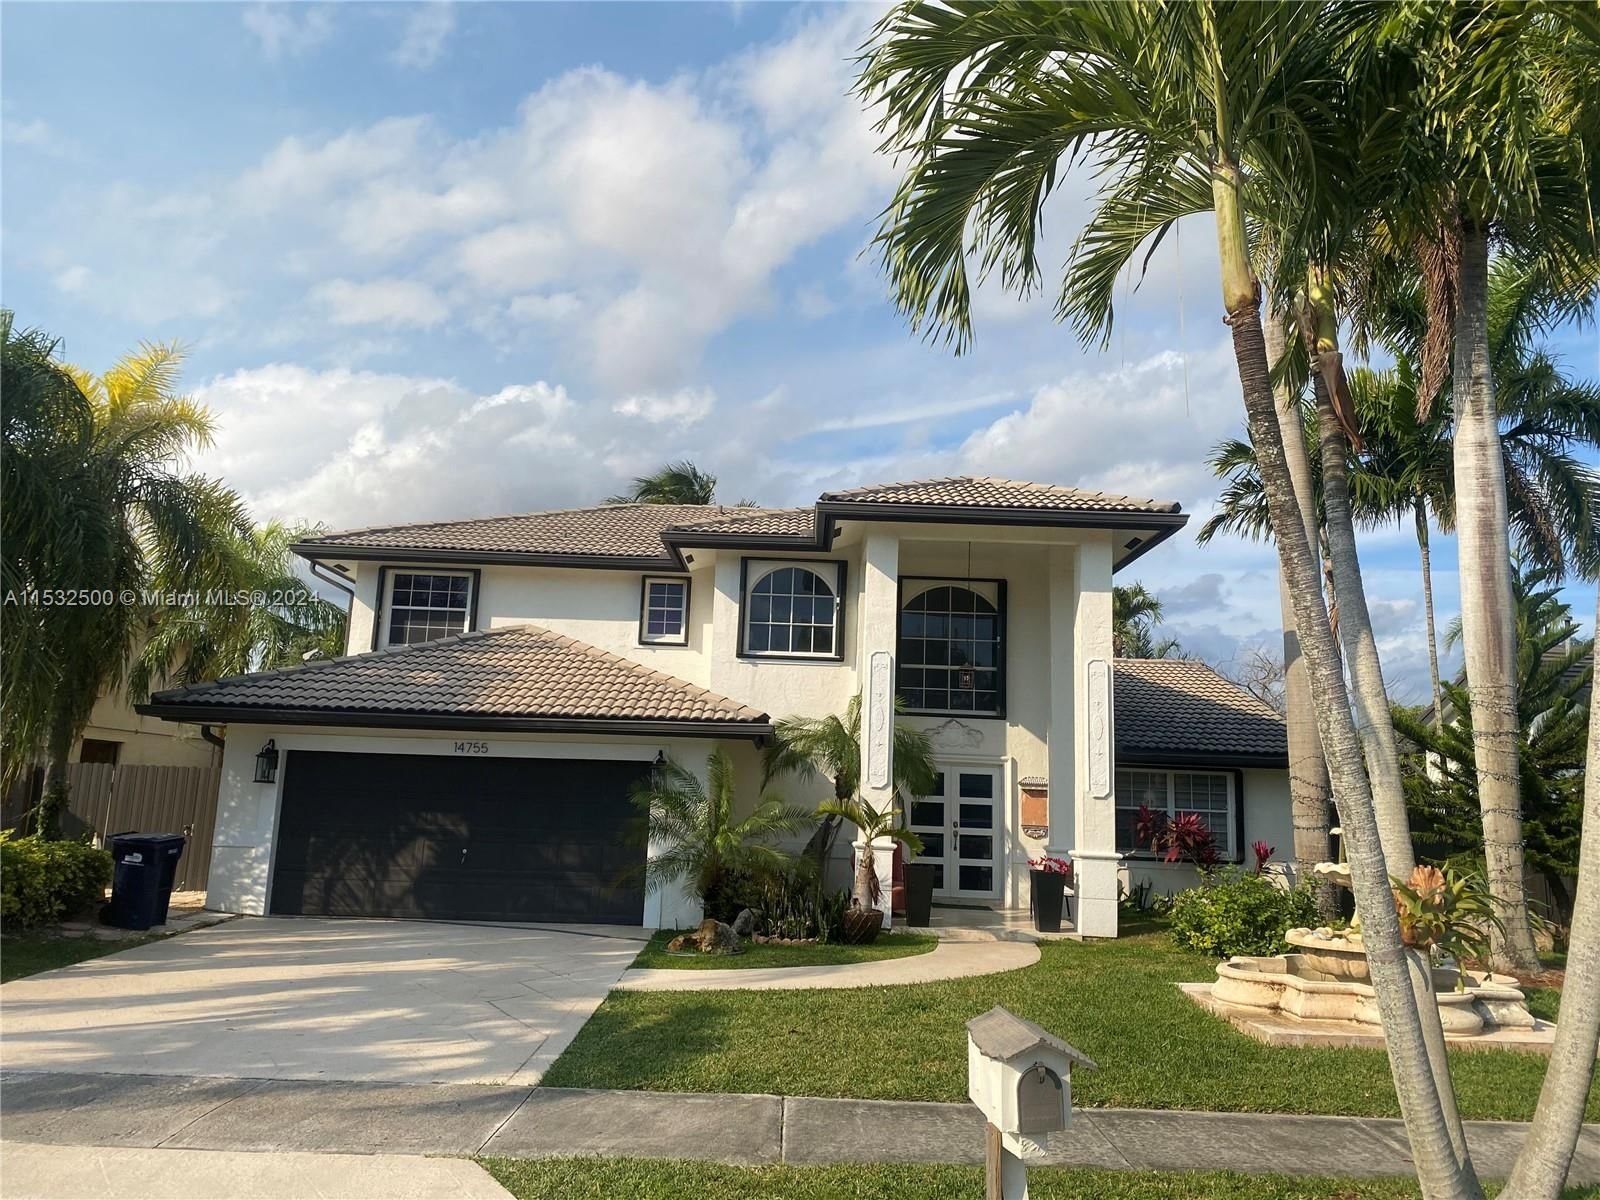 Real estate property located at 14755 168th Ter, Miami-Dade County, G B ESTATES, Miami, FL